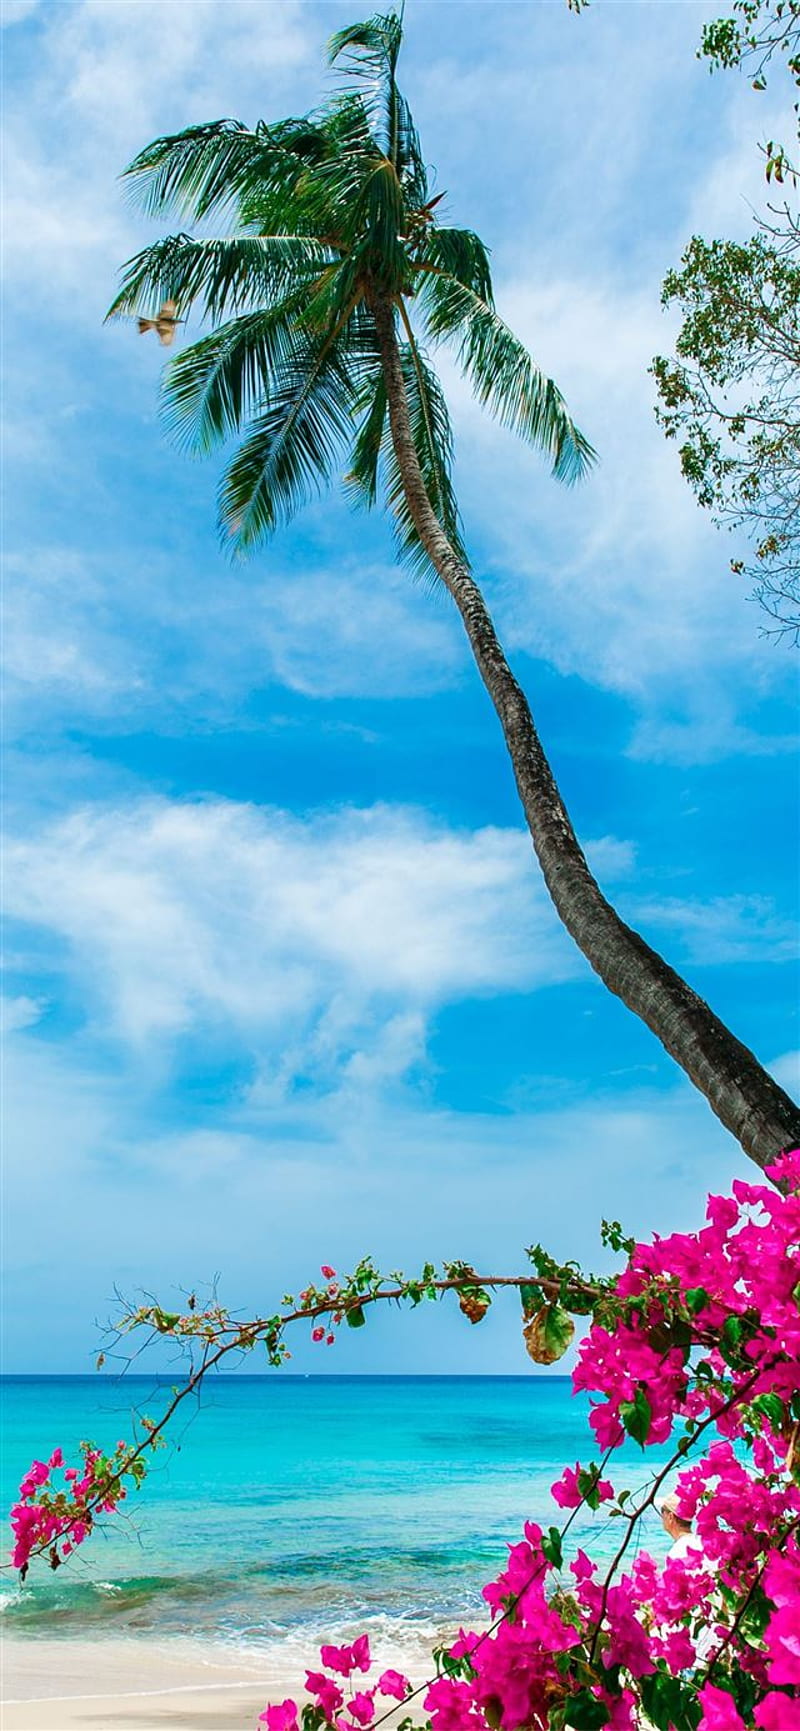 Bạn đang tìm kiếm hình nền đẹp cho màn hình iPhone của mình? Hãy khám phá bộ sưu tập hình nền biển Barbados với cát trắng, nước biển trong xanh và những bãi biển đẹp nhất thế giới. Hãy cho mình bờ biển Barbados này trên màn hình điện thoại bạn, để tận hưởng cảm giác thoải mái, thư giãn, và tâm hồn khám phá. 